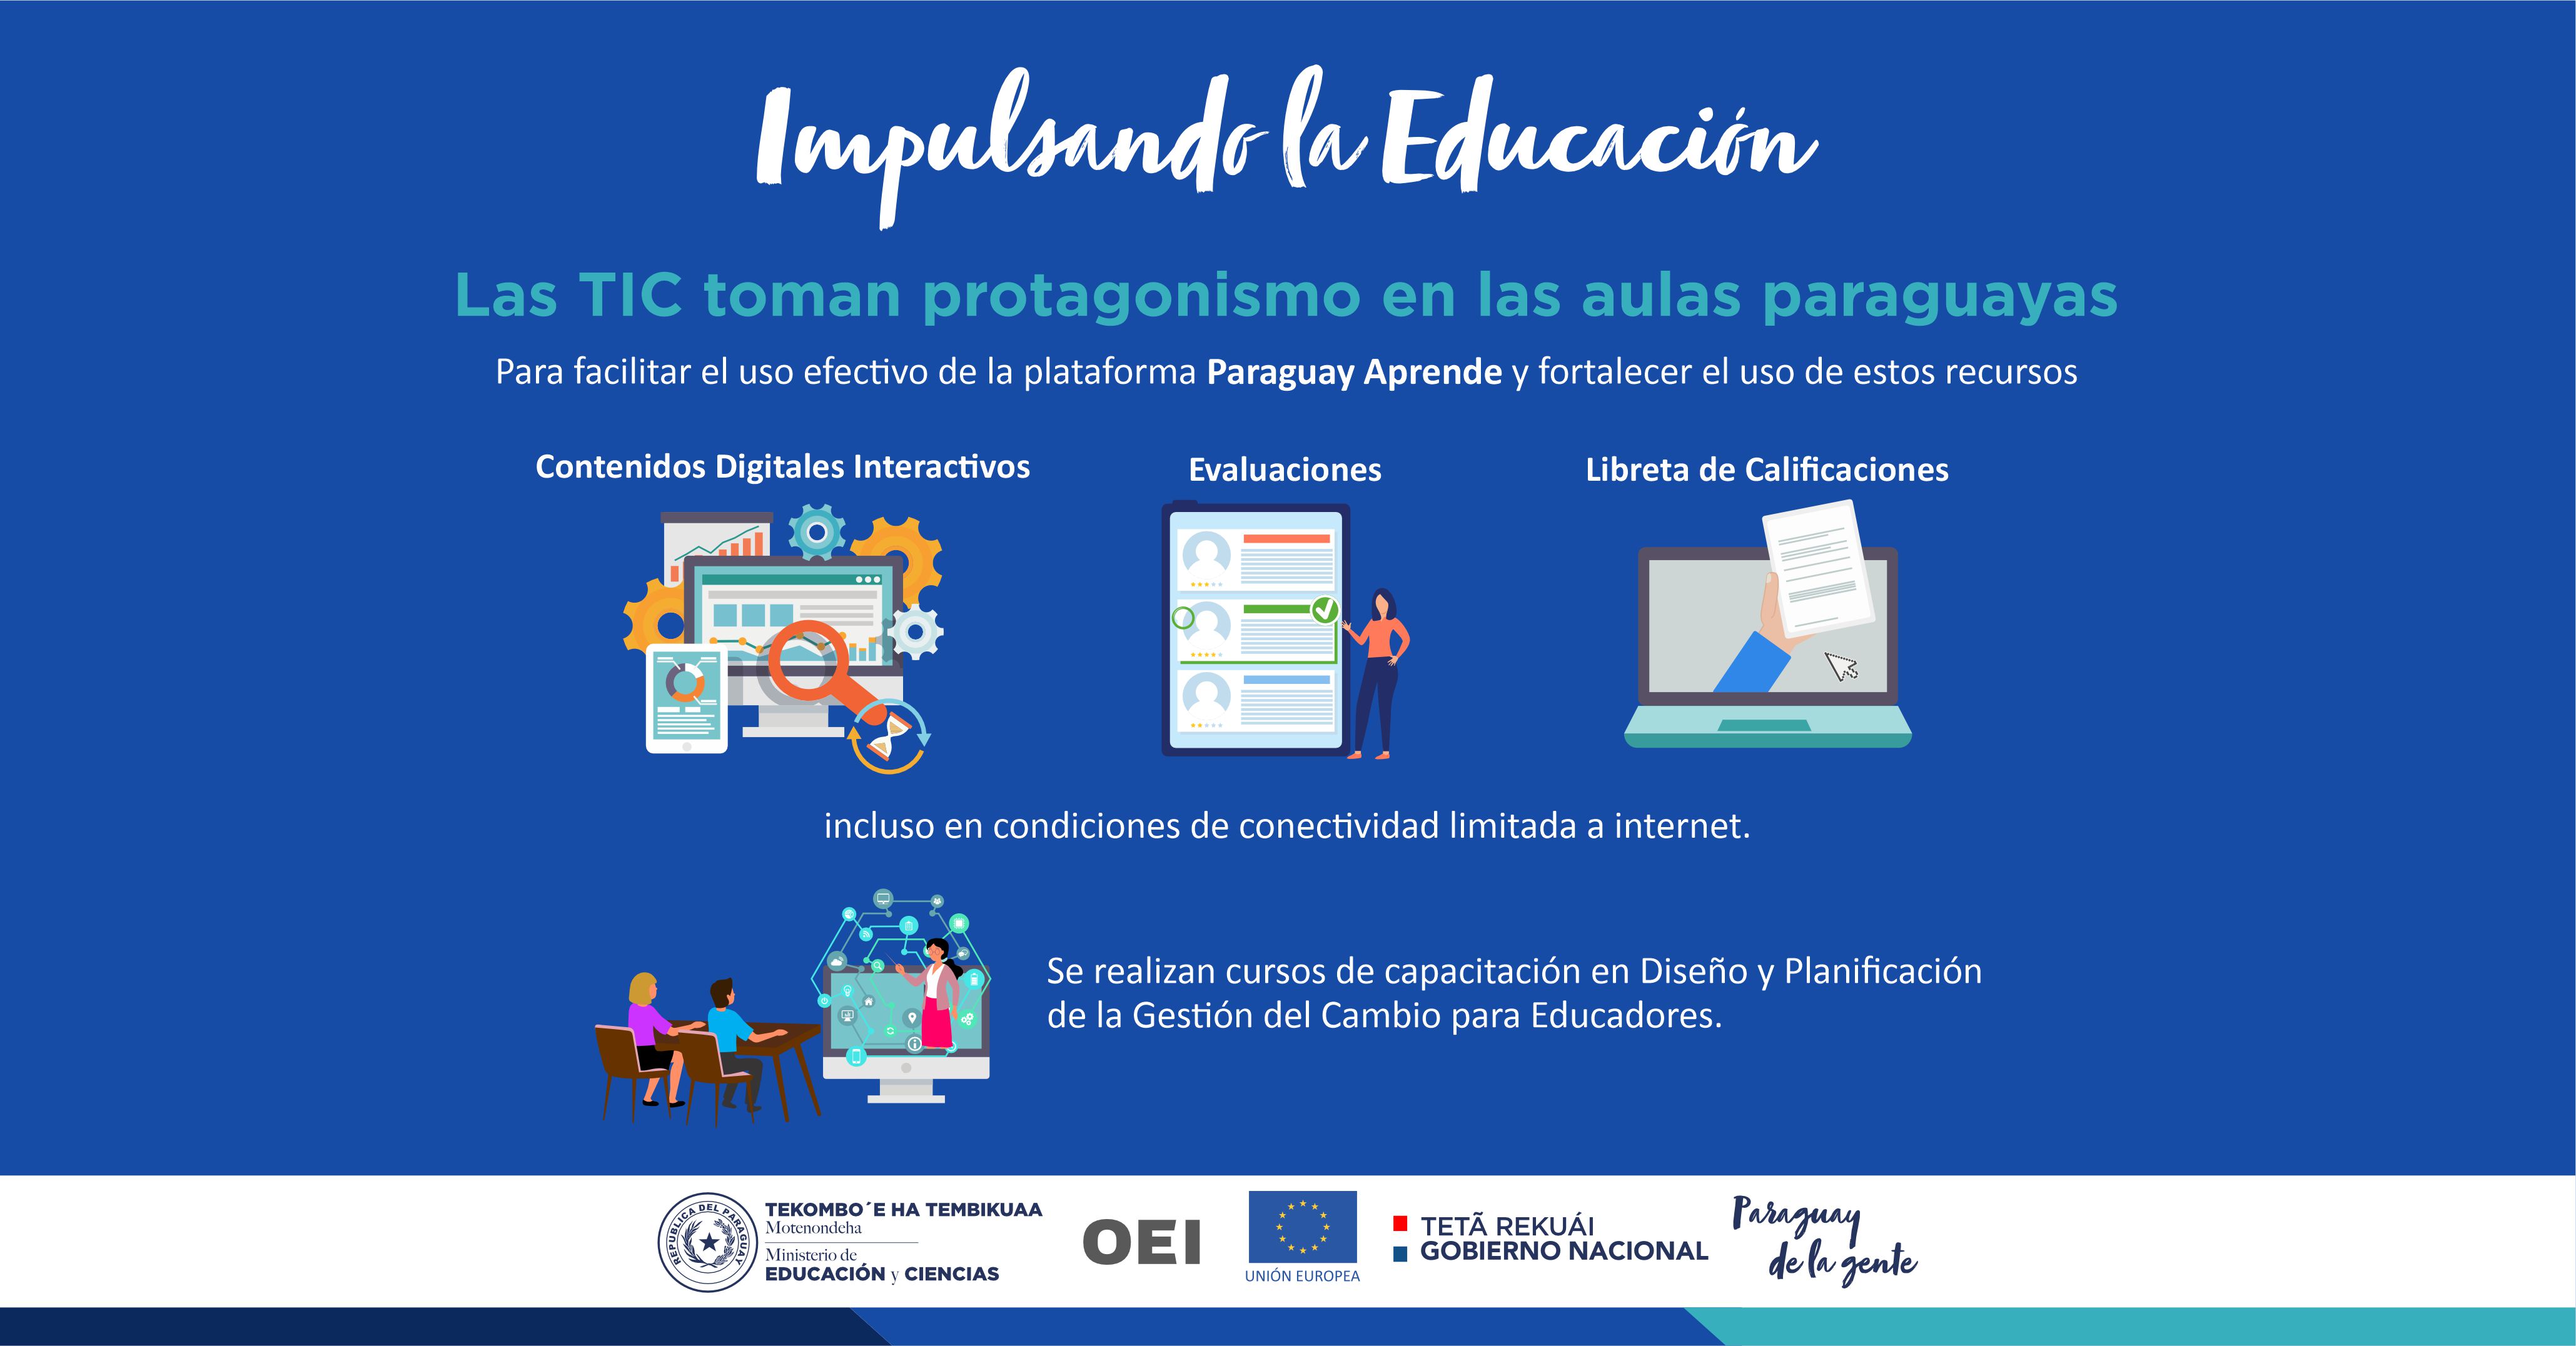 Las TIC toman protagonismo en las aulas paraguayas